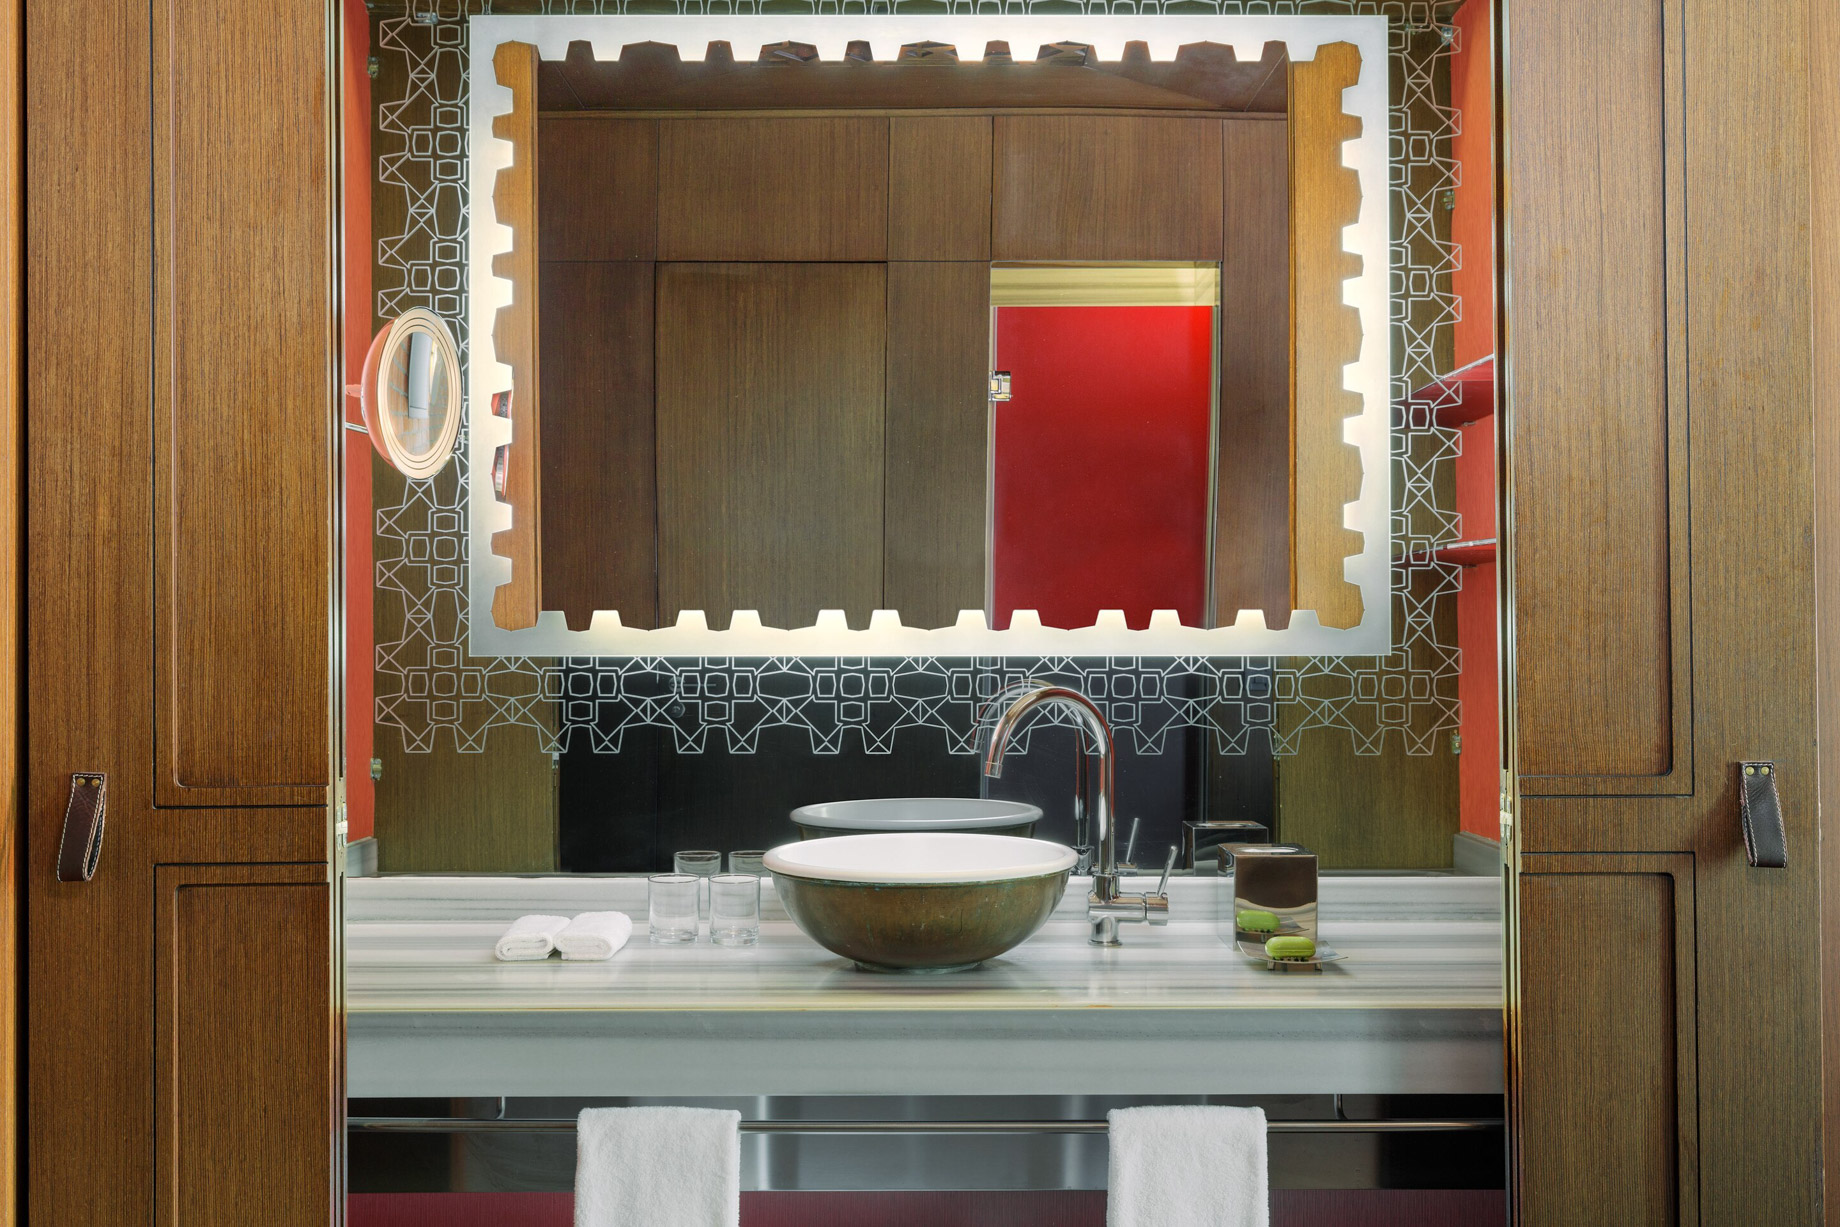 W Istanbul Hotel - Istanbul, Turkey - Guest Bathroom Vanity Decor